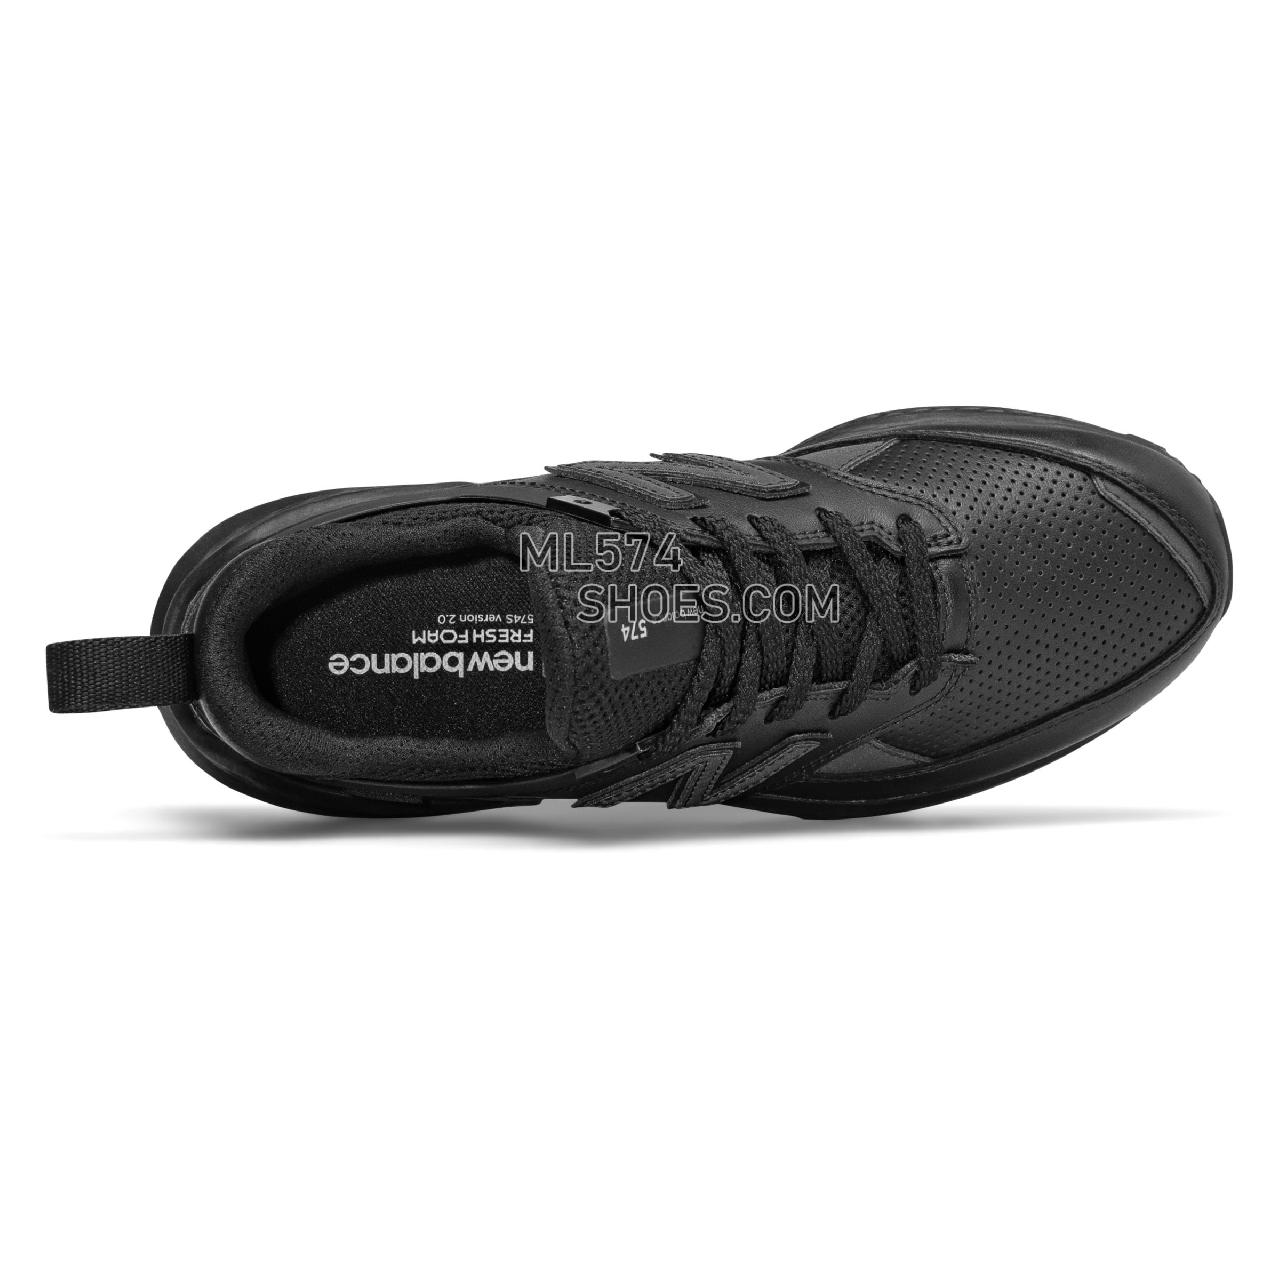 New Balance 574 Sport - Women's Sport Style Sneakers - Black - WS574FSA